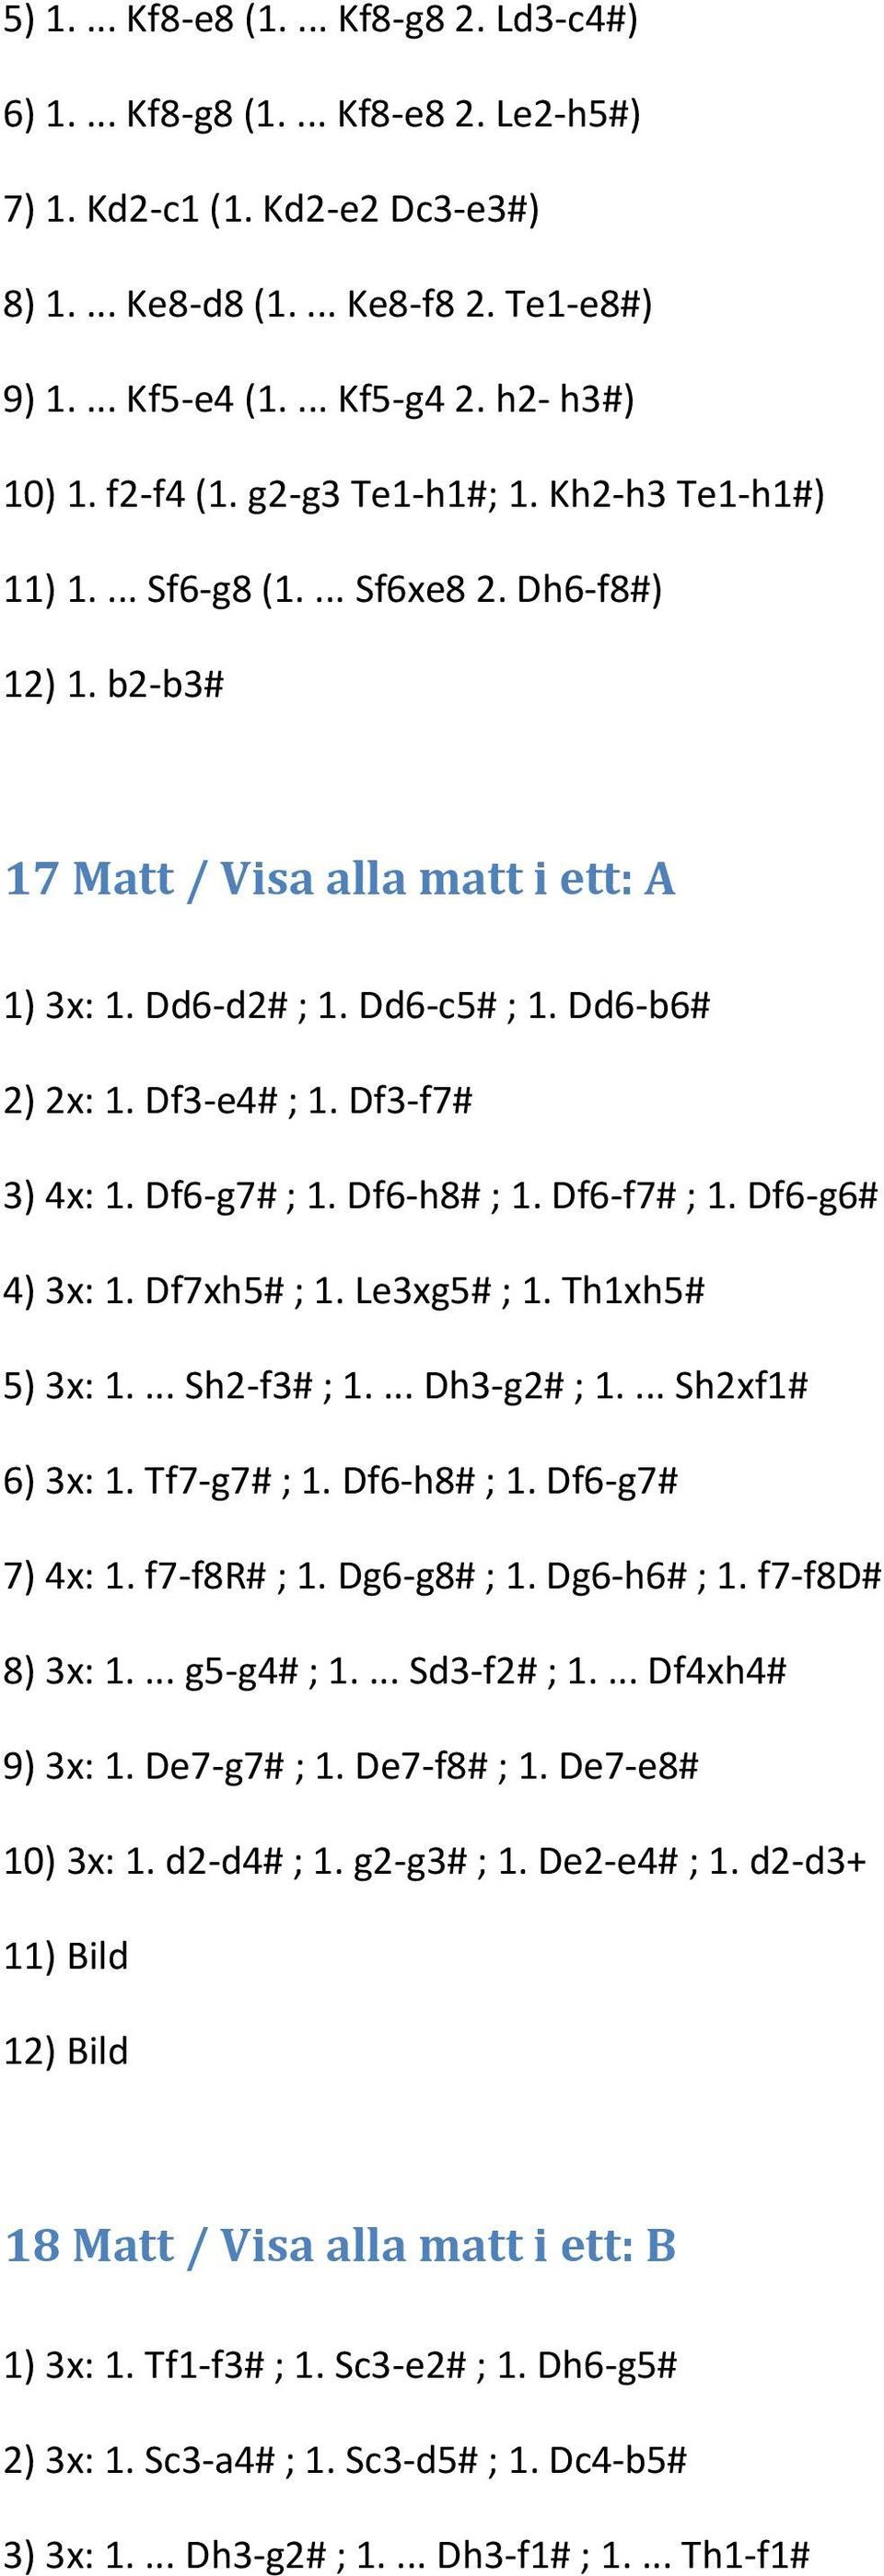 Dd6-b6# 2) 2x: 1. Df3-e4# ; 1. Df3-f7# 3) 4x: 1. Df6-g7# ; 1. Df6-h8# ; 1. Df6-f7# ; 1. Df6-g6# 4) 3x: 1. Df7xh5# ; 1. Le3xg5# ; 1. Th1xh5# 5) 3x: 1.... Sh2-f3# ; 1.... Dh3-g2# ; 1.... Sh2xf1# 6) 3x: 1.